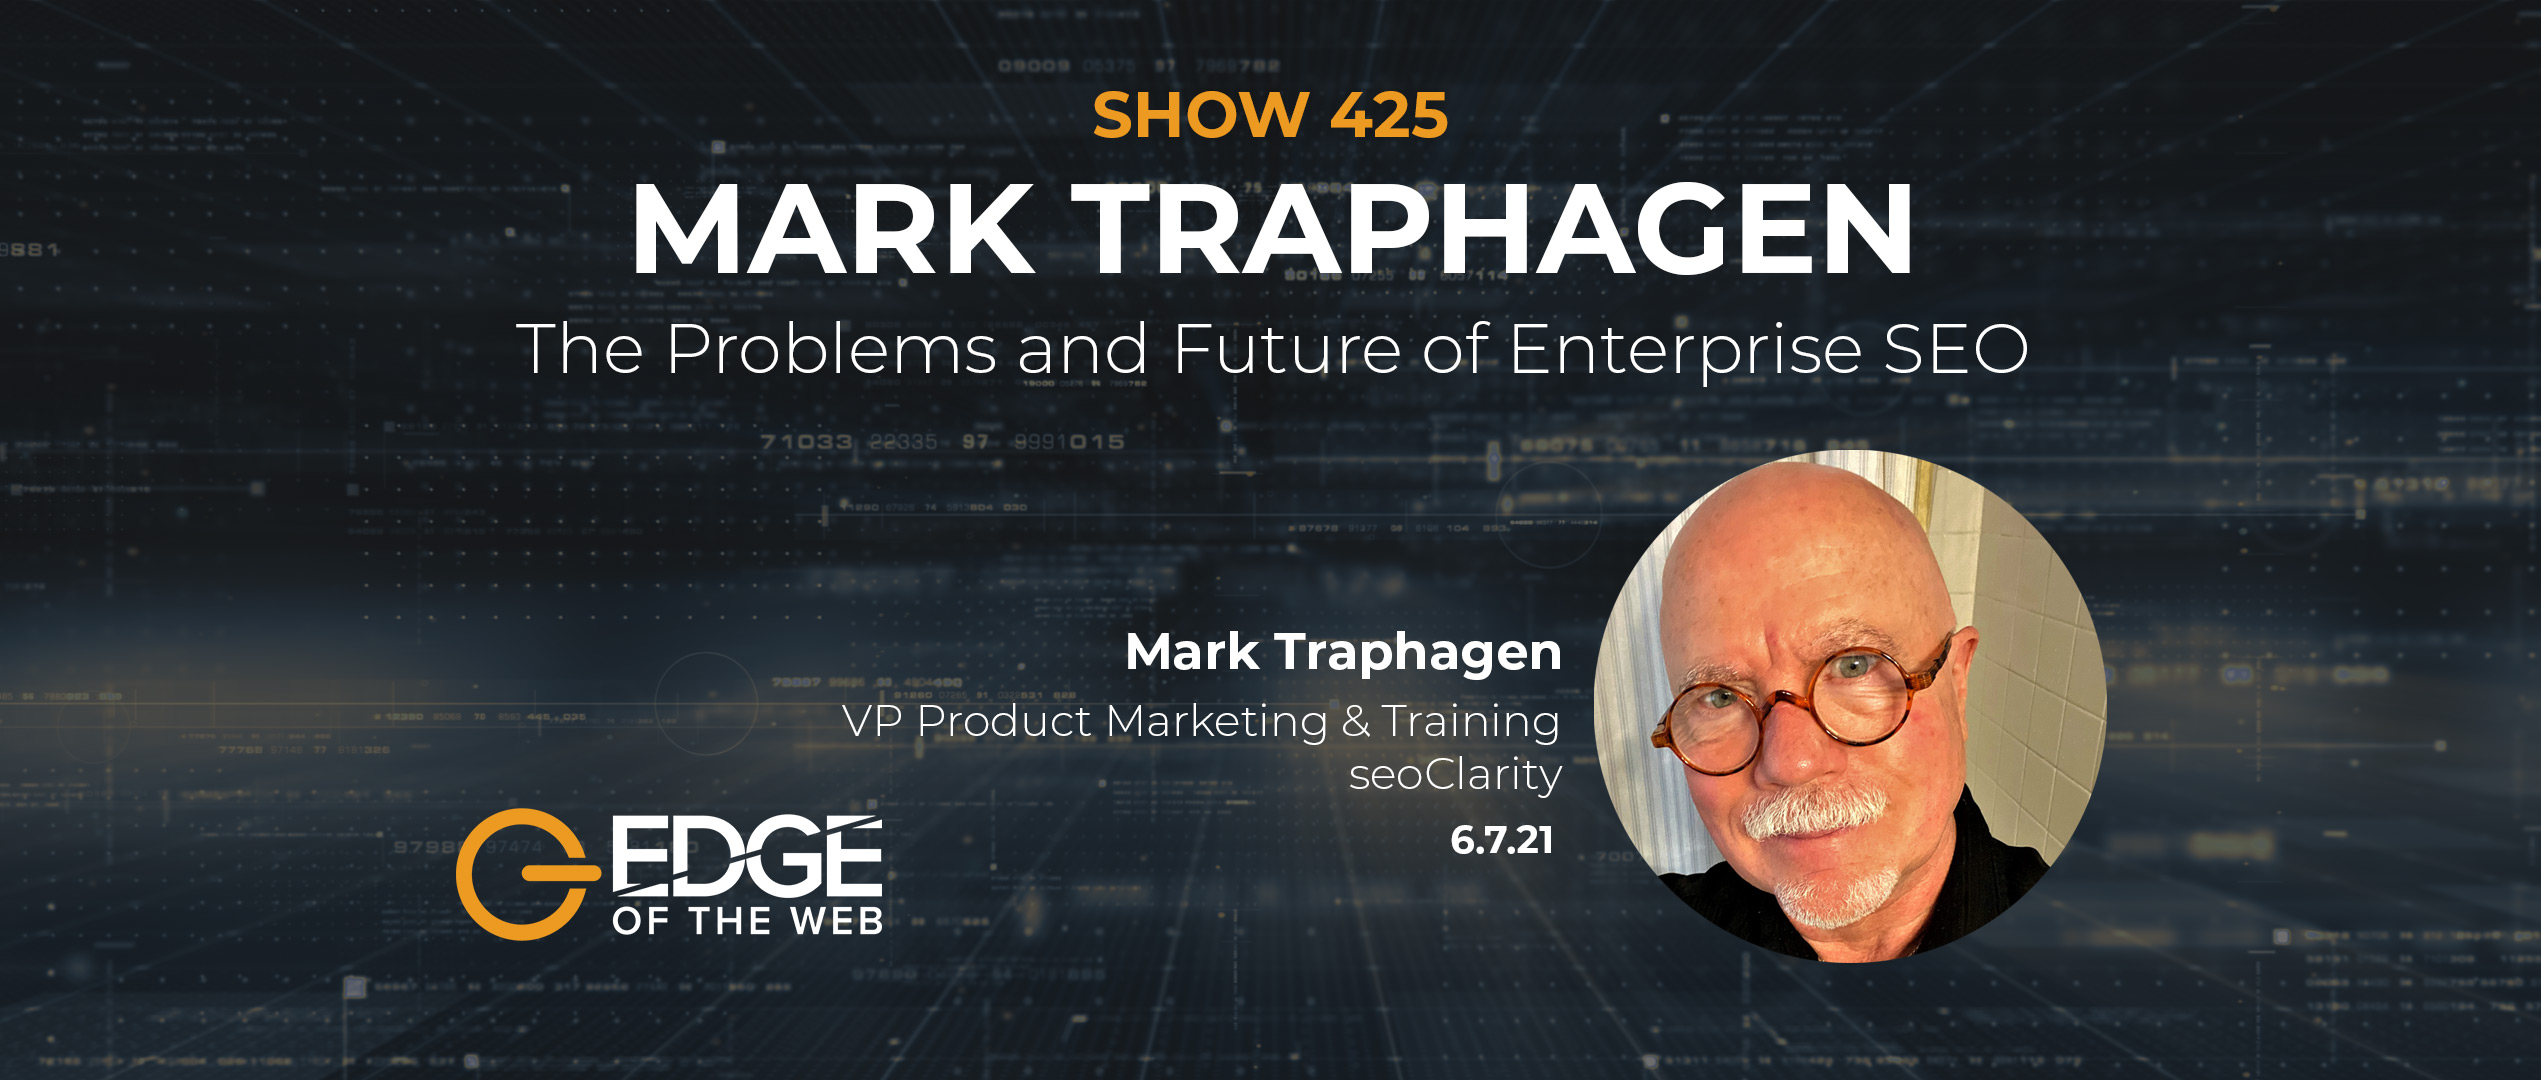 Mark Traphagen - Show 425